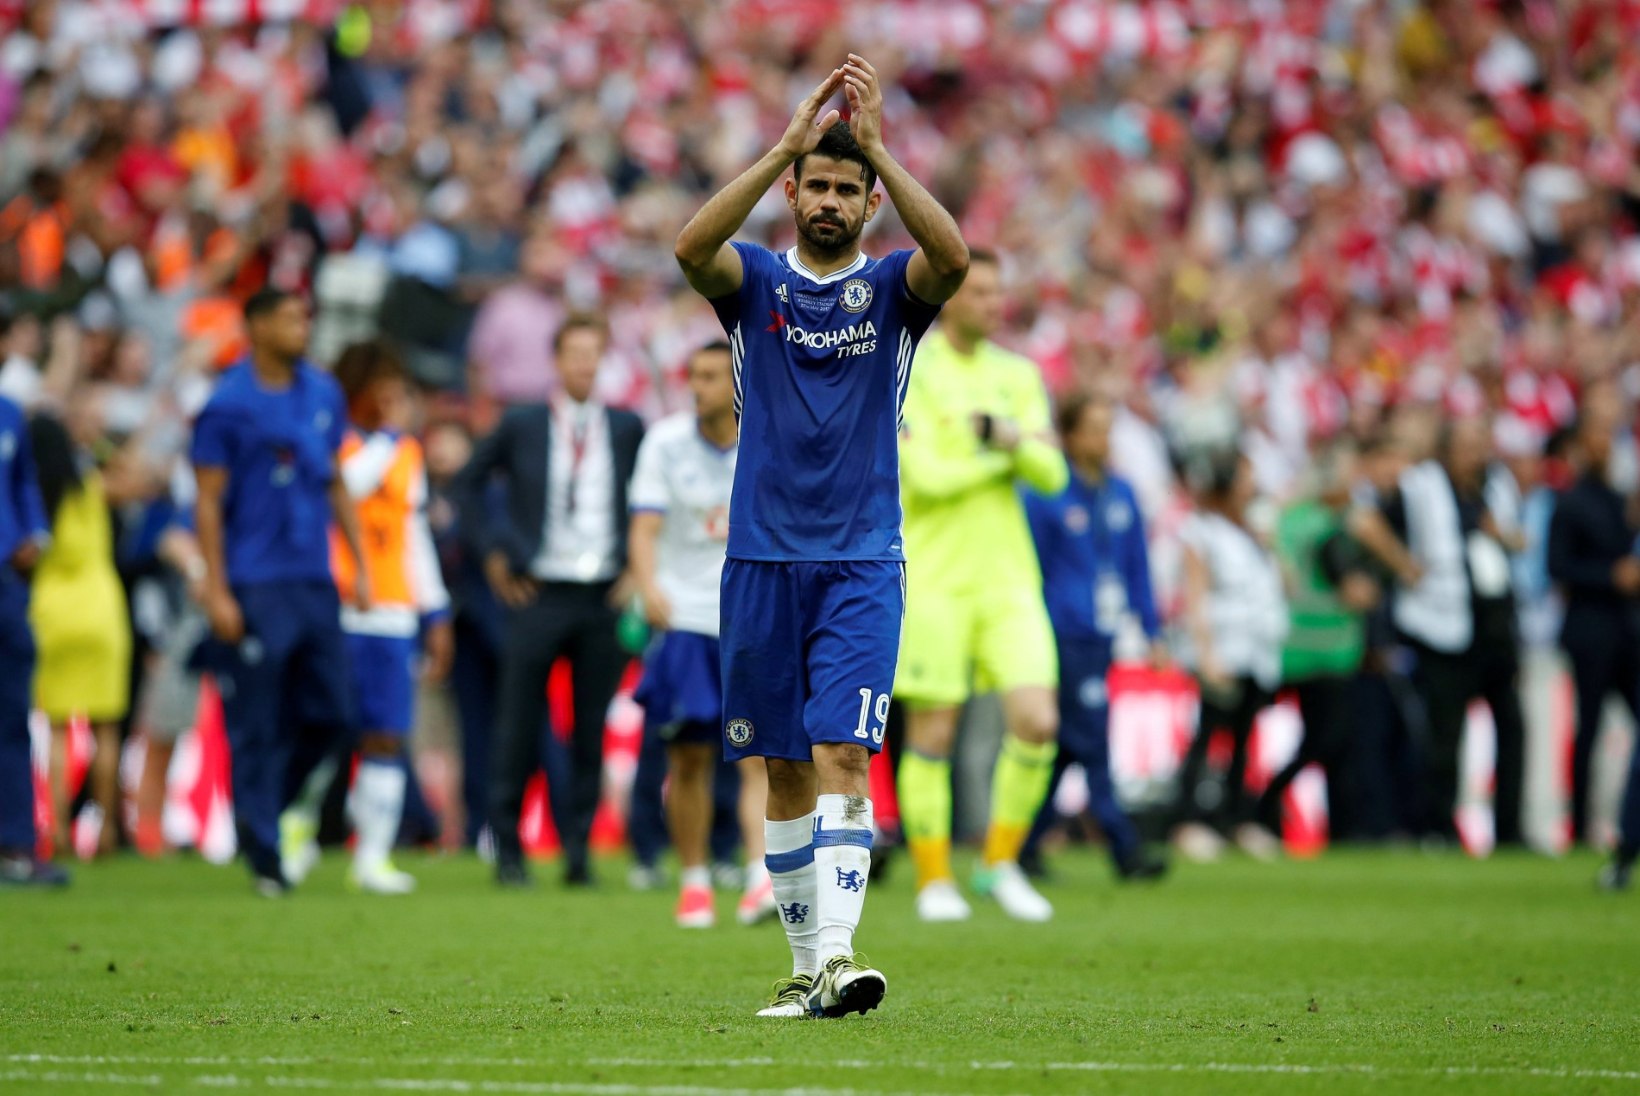 KUULUJUTUVESKI | Siiani anonüümsena püsinud Tottenham on tegemas klubi rekordostu, Costa saaga lõppemas